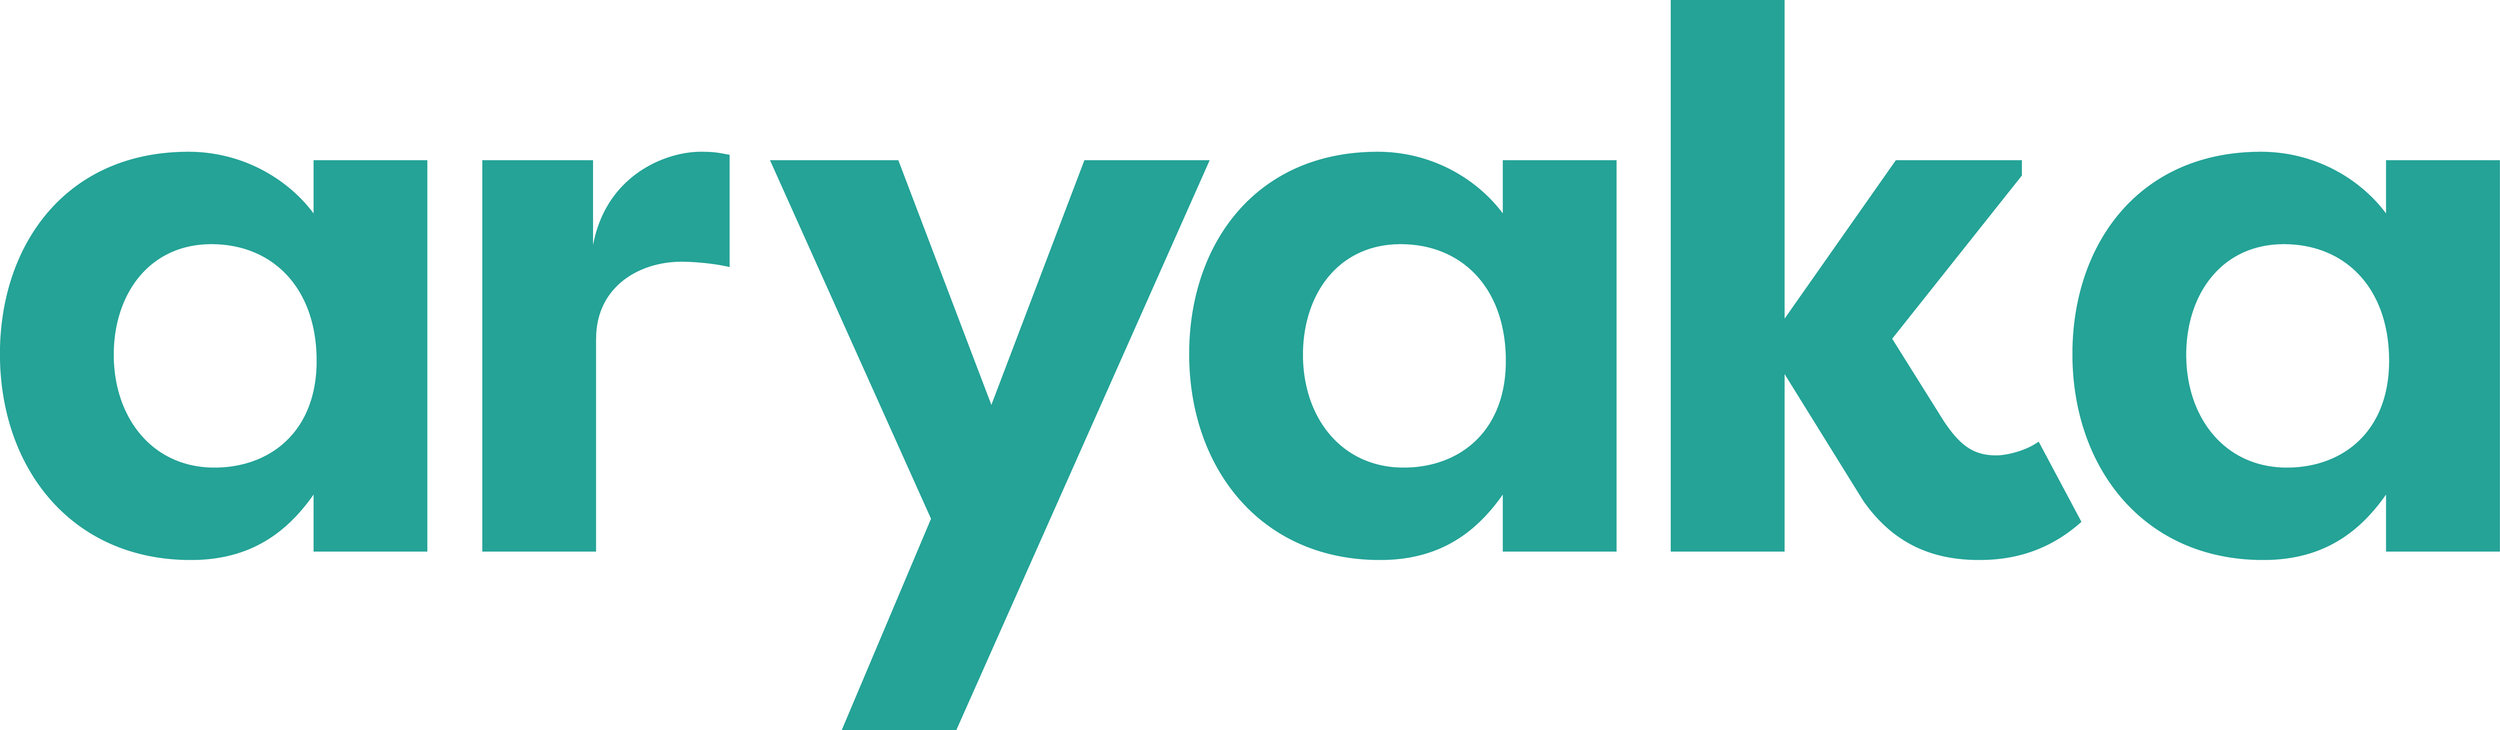 Aryaka-Logo_Teal.jpg